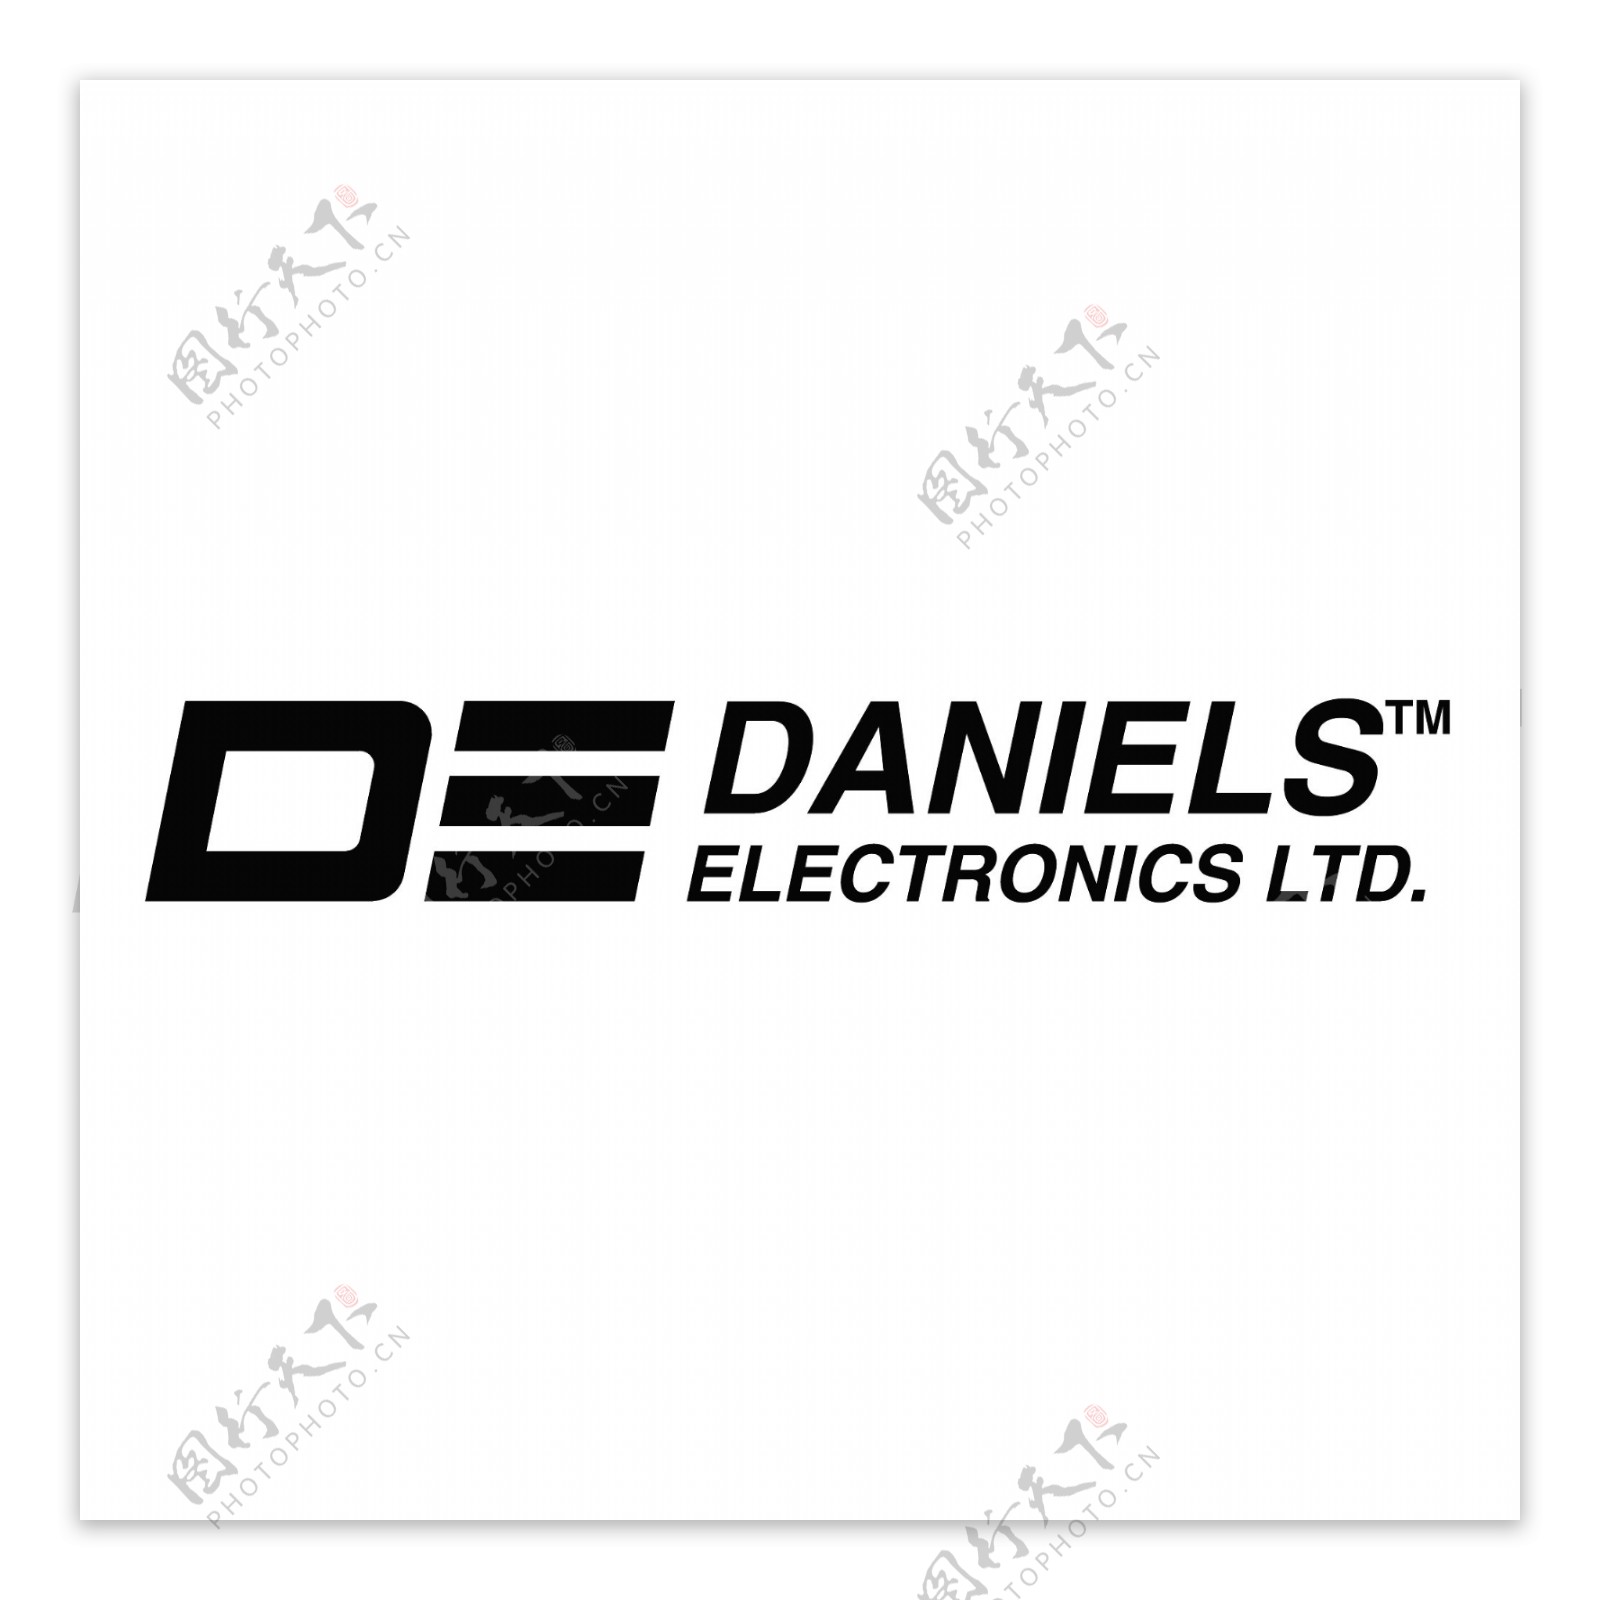 丹尼尔斯电子公司